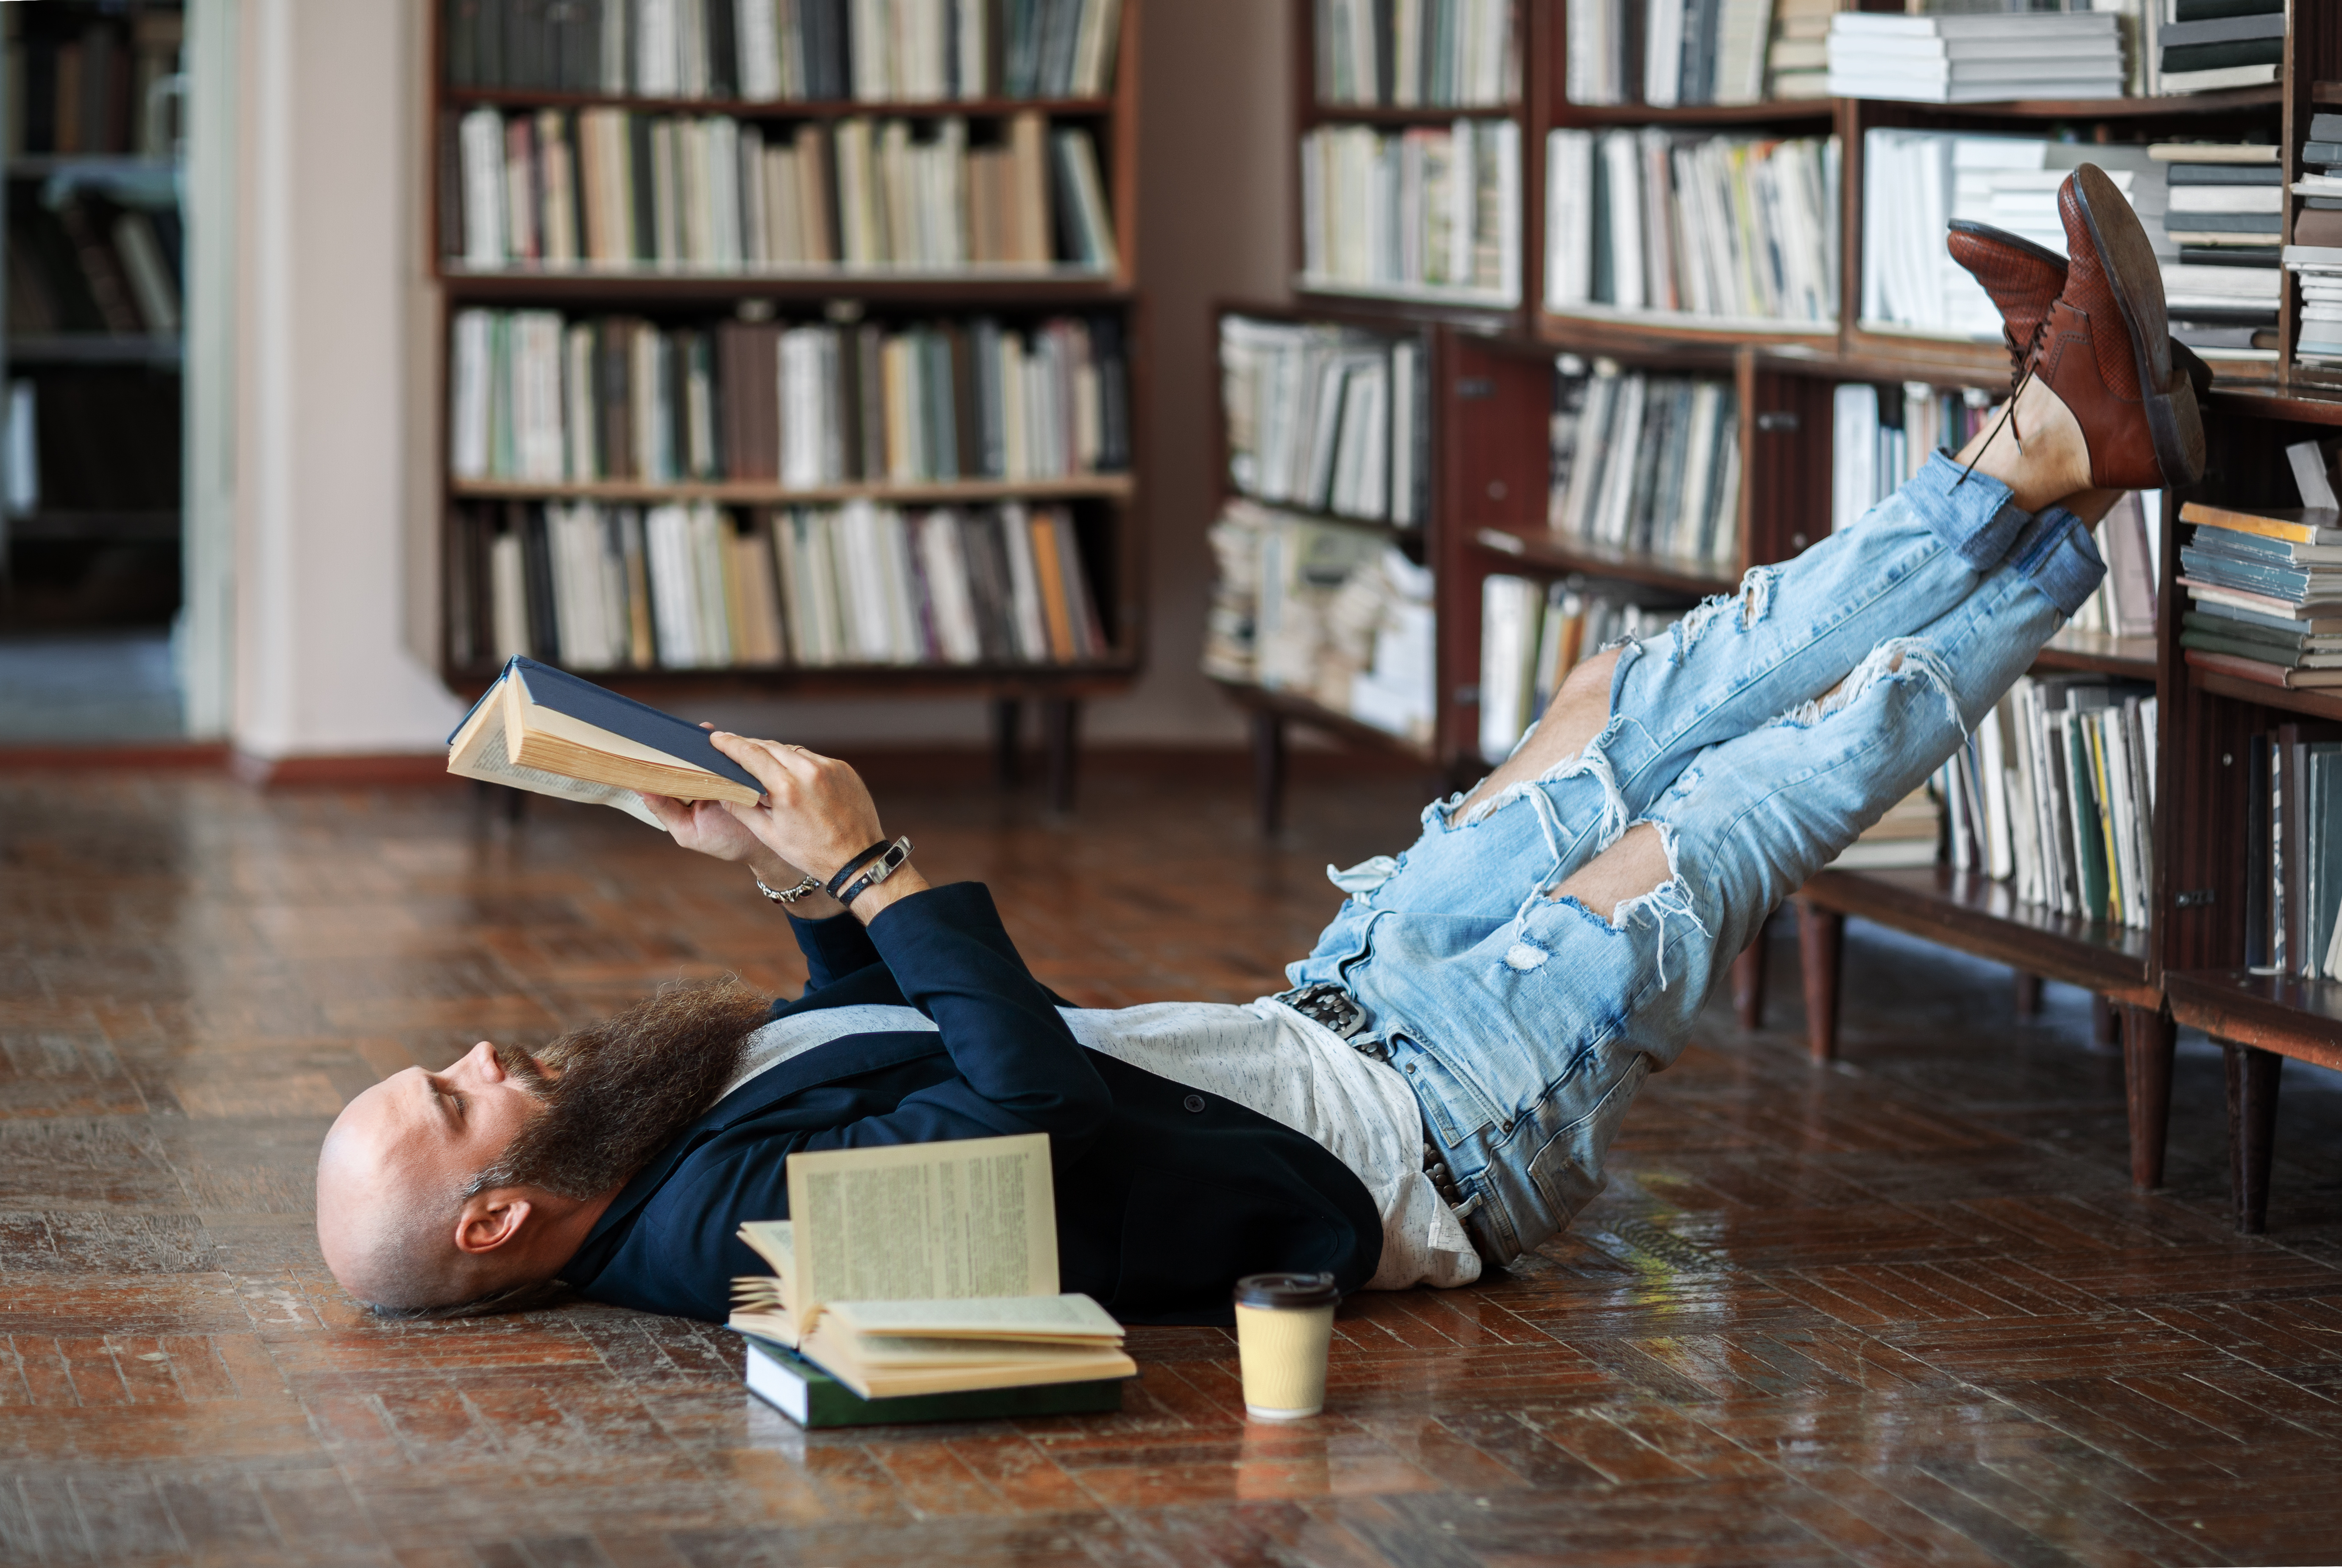 Читать лежа вредно лежа на горячем песке. Книги лежат на полу. Книга лежит. Человек валяется в книгах. Чтение книги на полу.